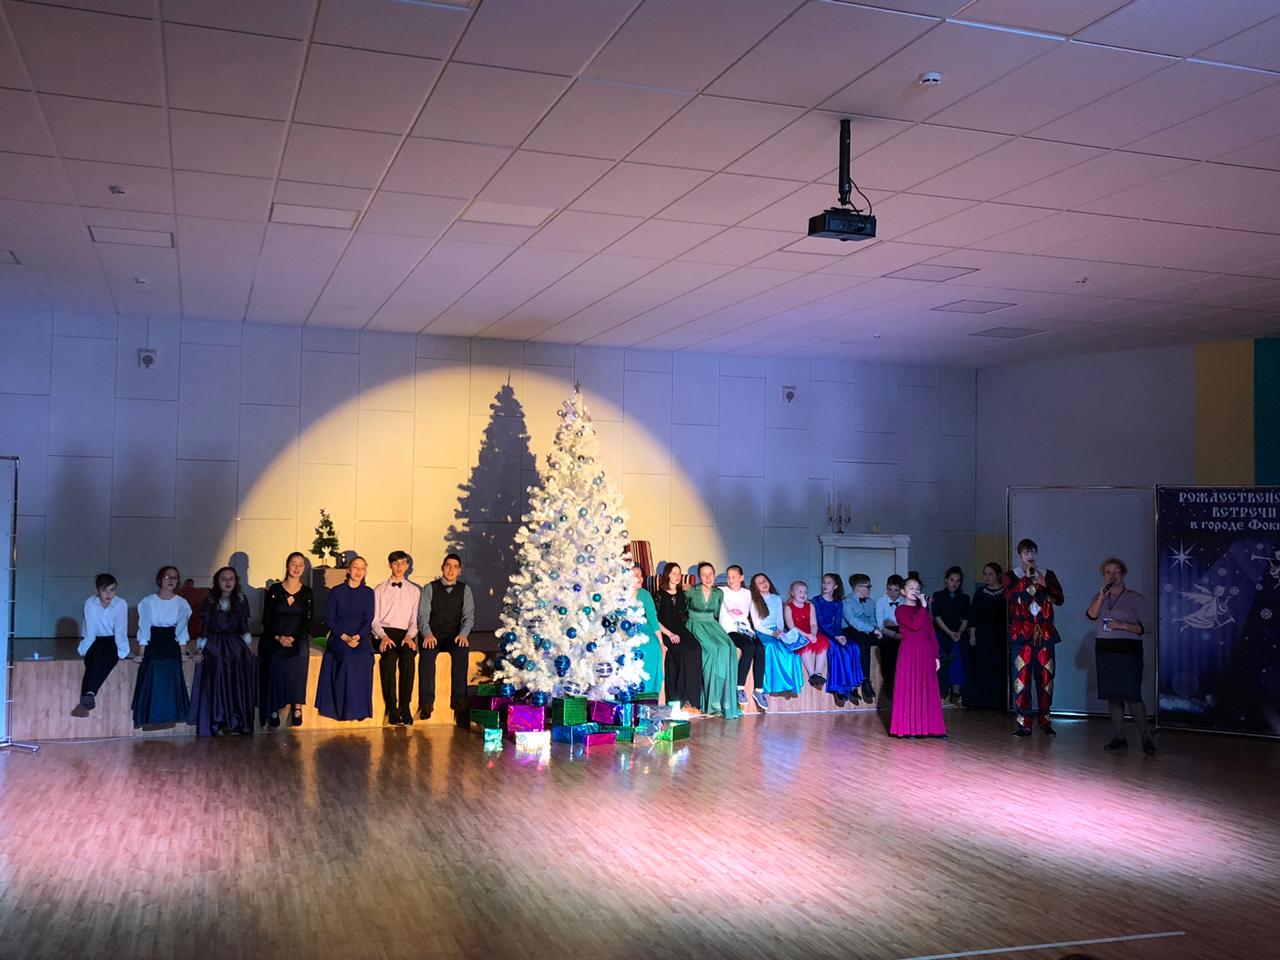 Находкинская епархия организовала конкурс драматического искусства «Рождественские встречи»